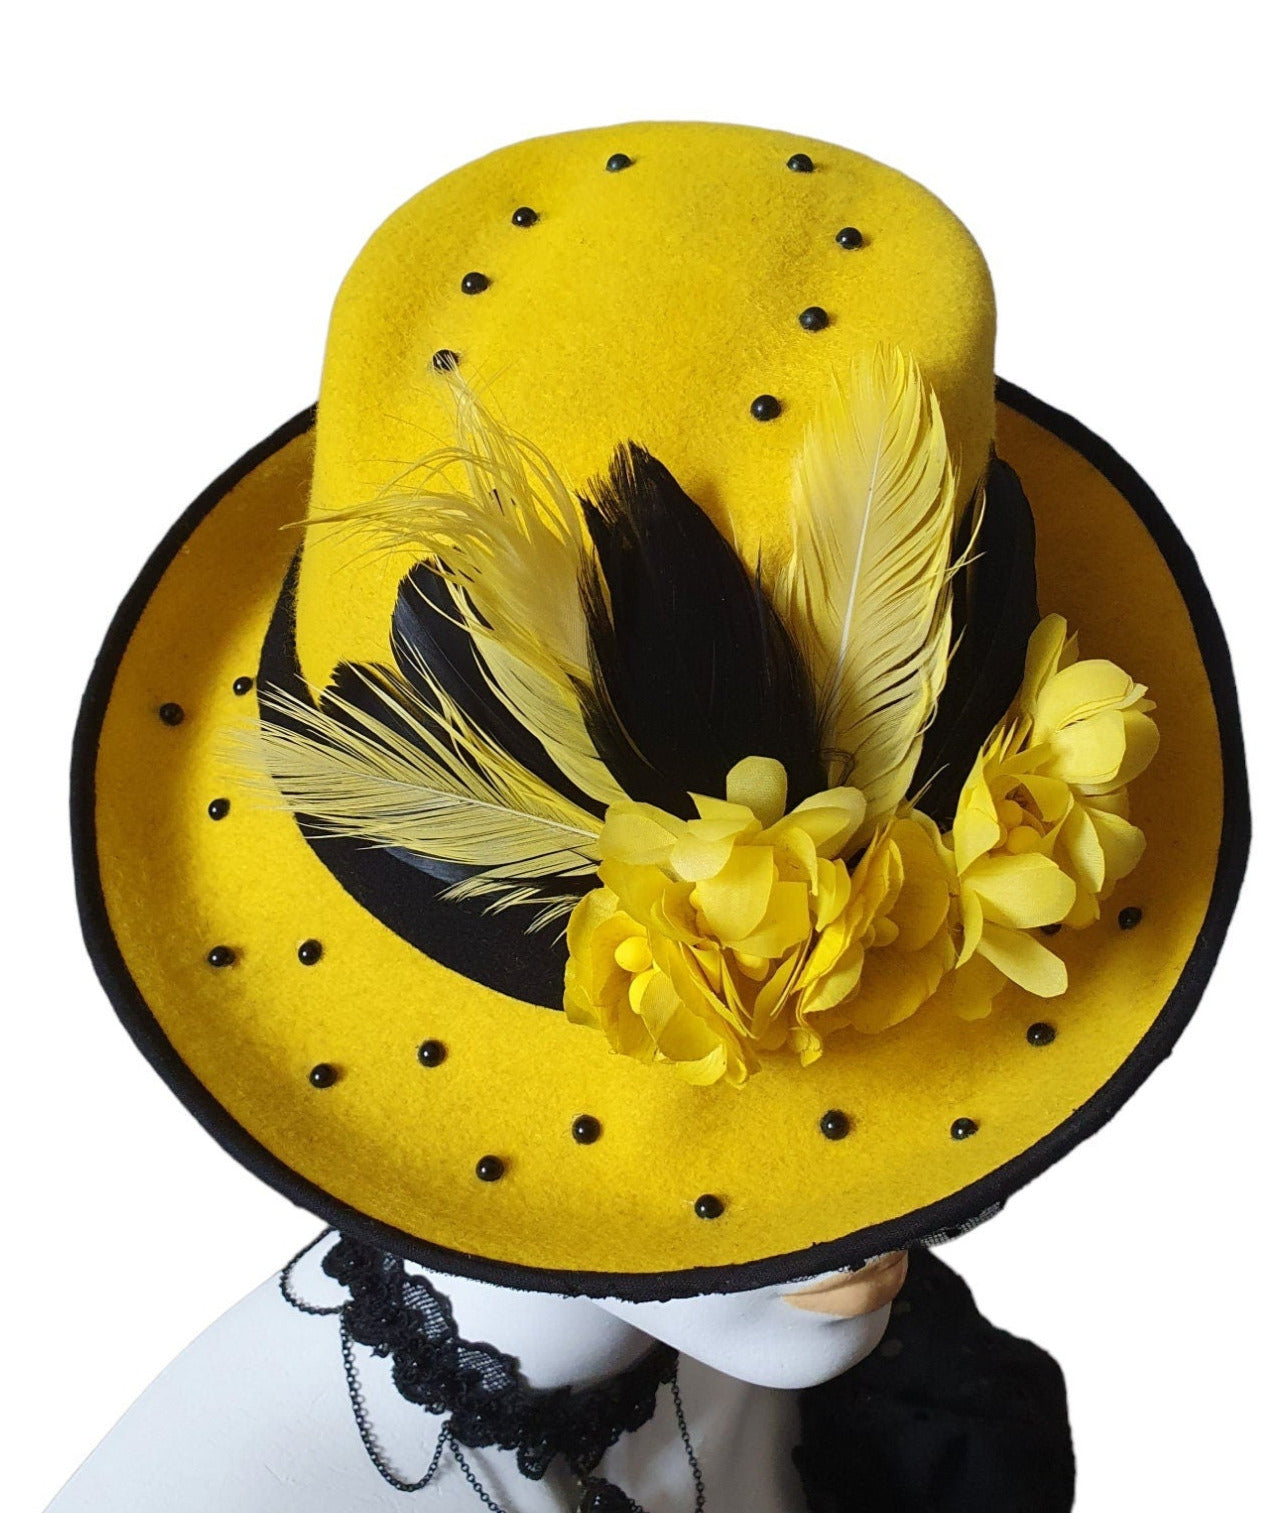 Sombrero de fieltro para mujer Copa asimétrica hecho a mano, sombrero fedora, sombrero de invitada, sombrero fedora de señora, diseño único, evento especial